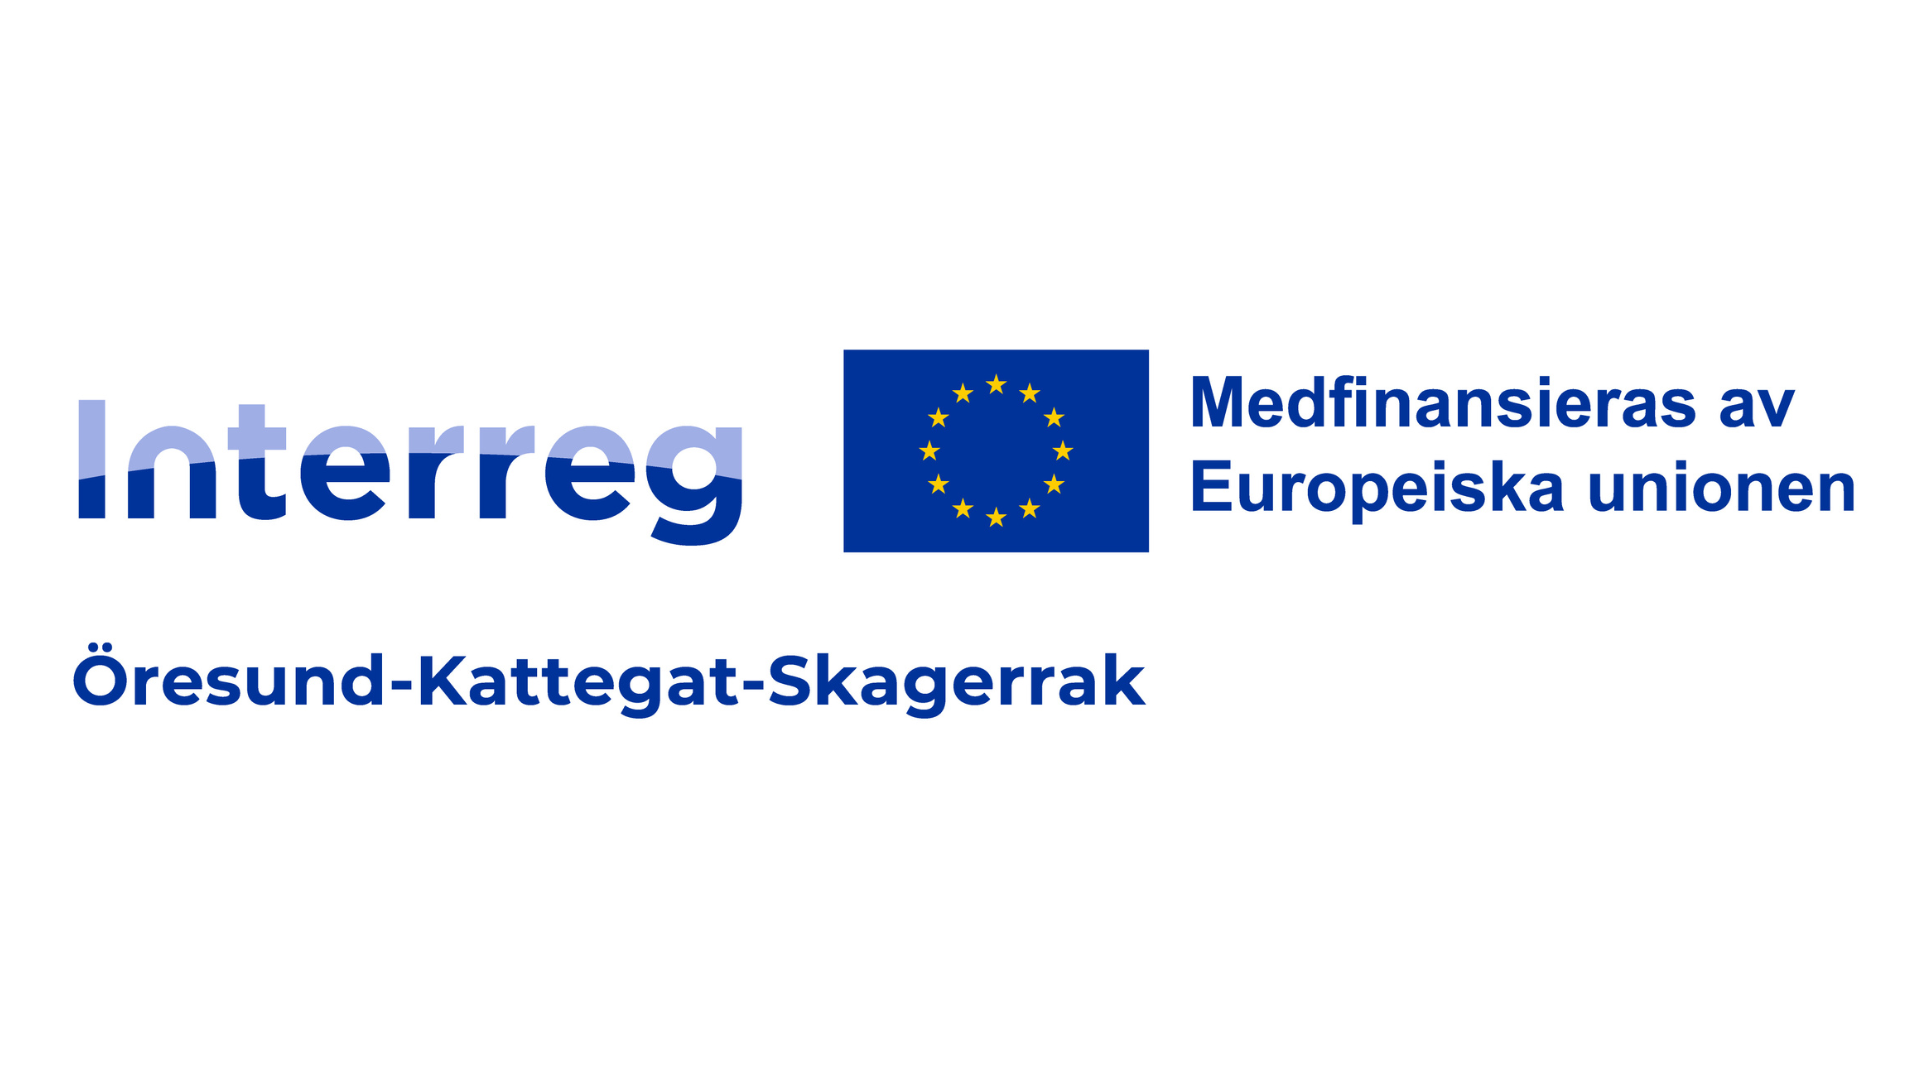 Grafik. Europeiska unionens logotyp. Text i bild: Interreg Öresund, Kattegat, Skagerrak. Medfinansieras av Europeiska unionen.